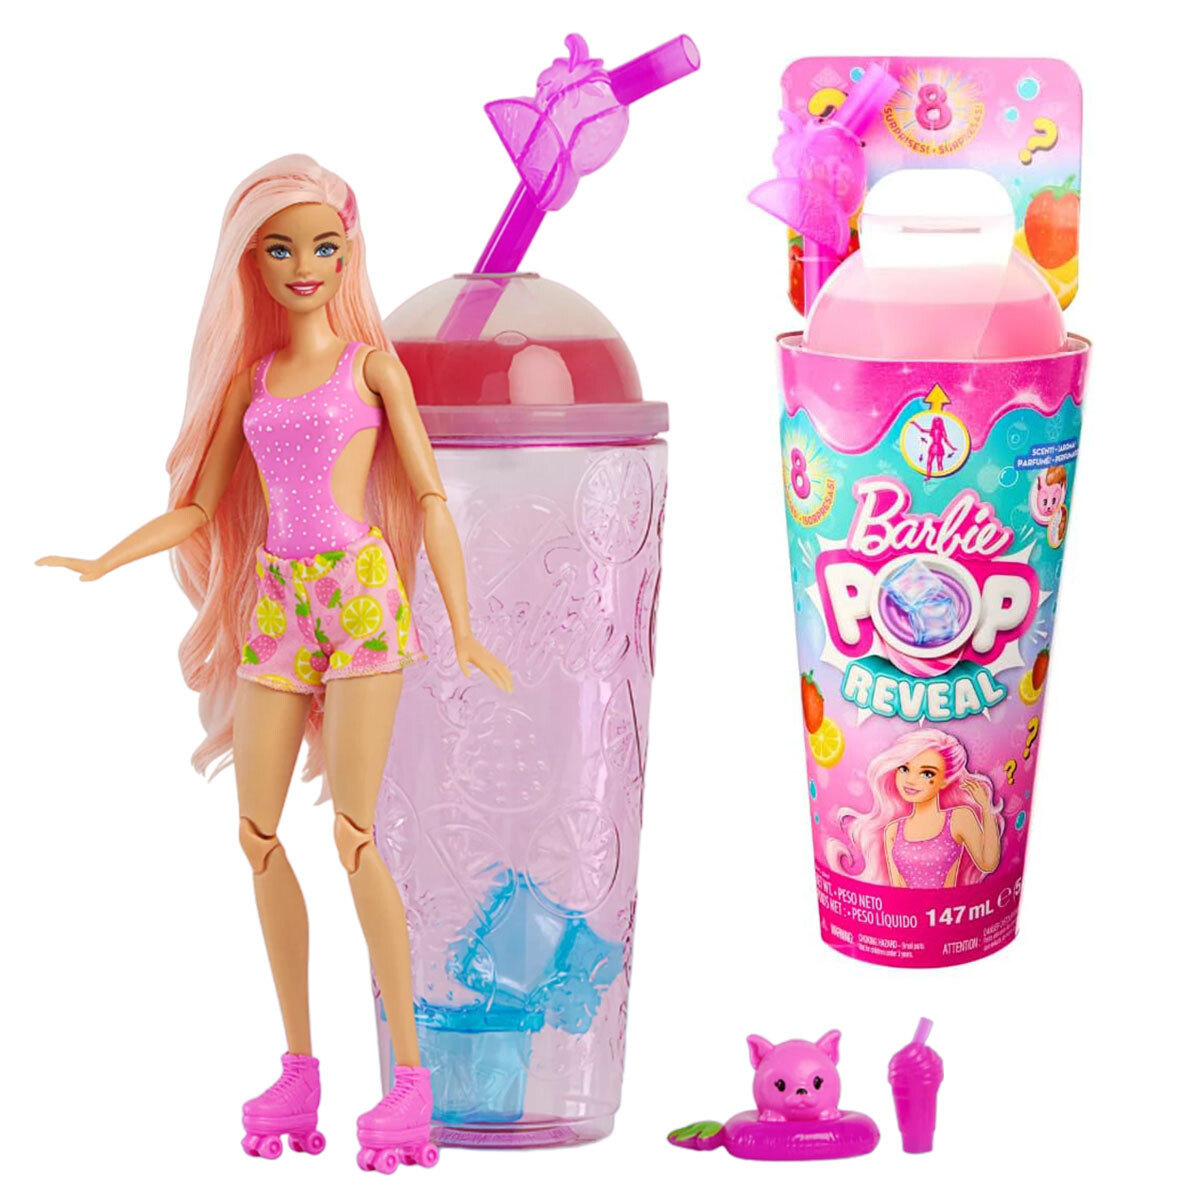 Muñeca Barbie Pop Reveal + Vaso Con Accesorios - Rosa 